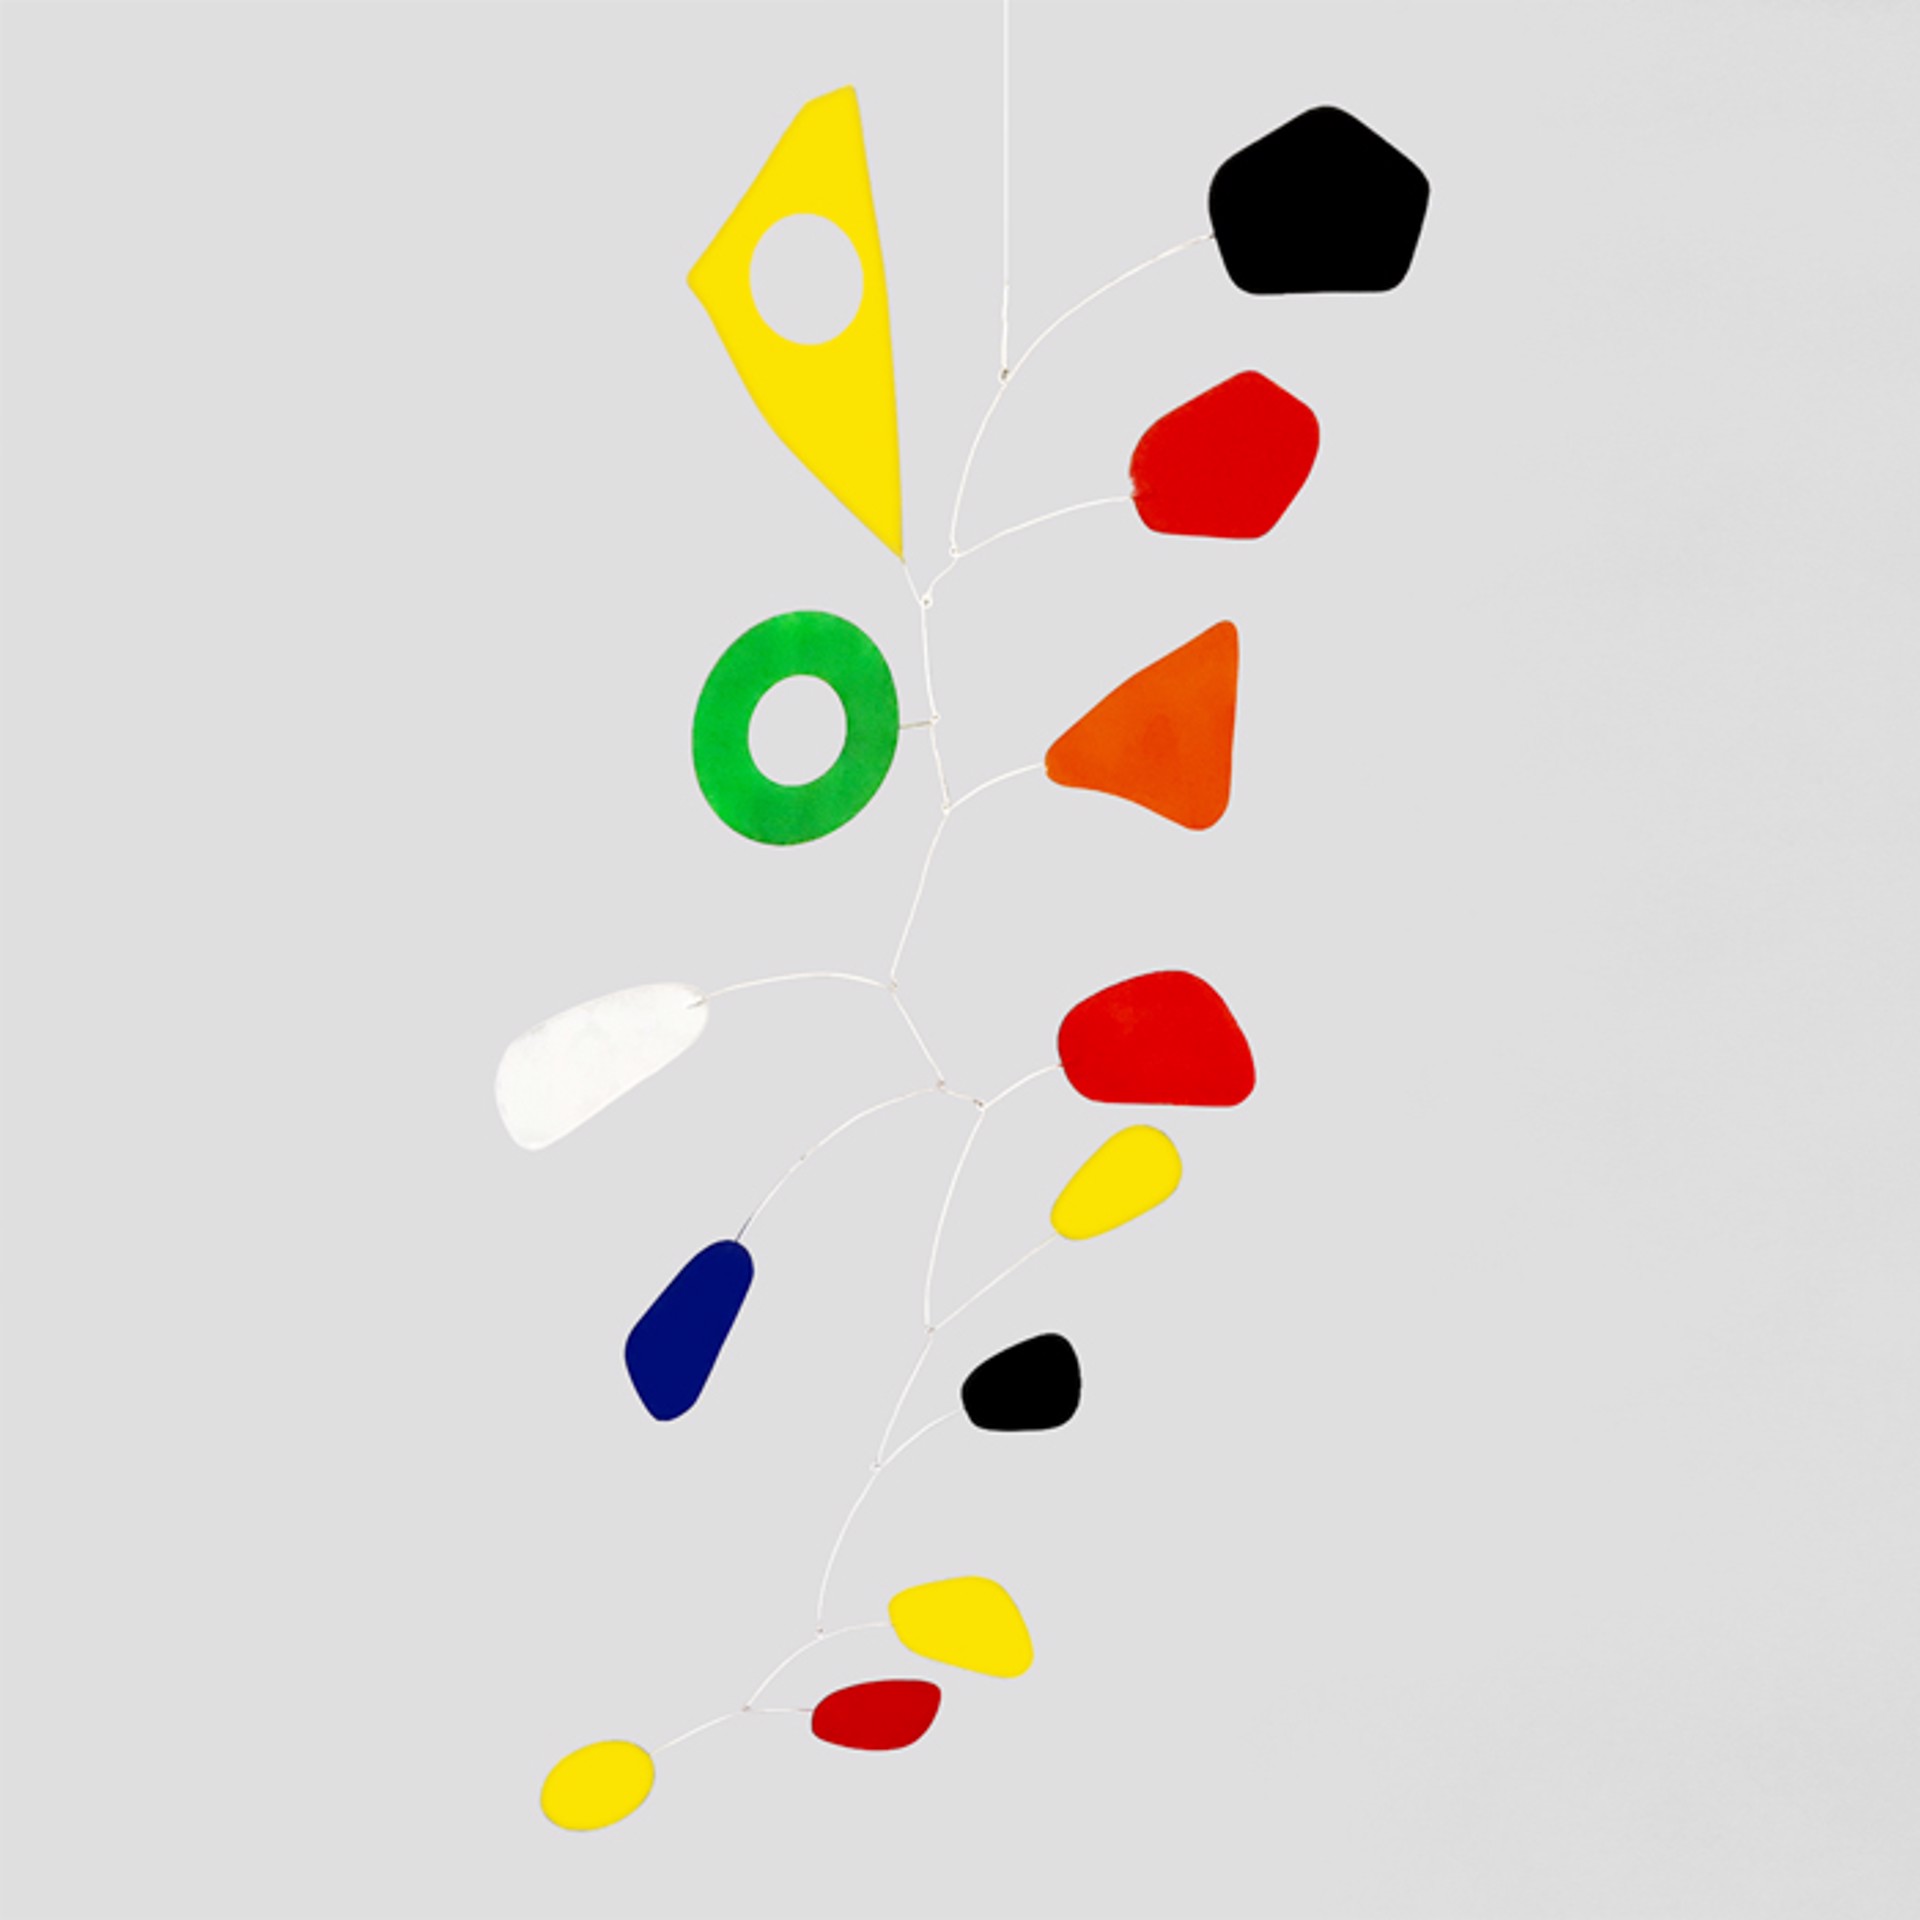 Multicolor 31 by David C. Levy